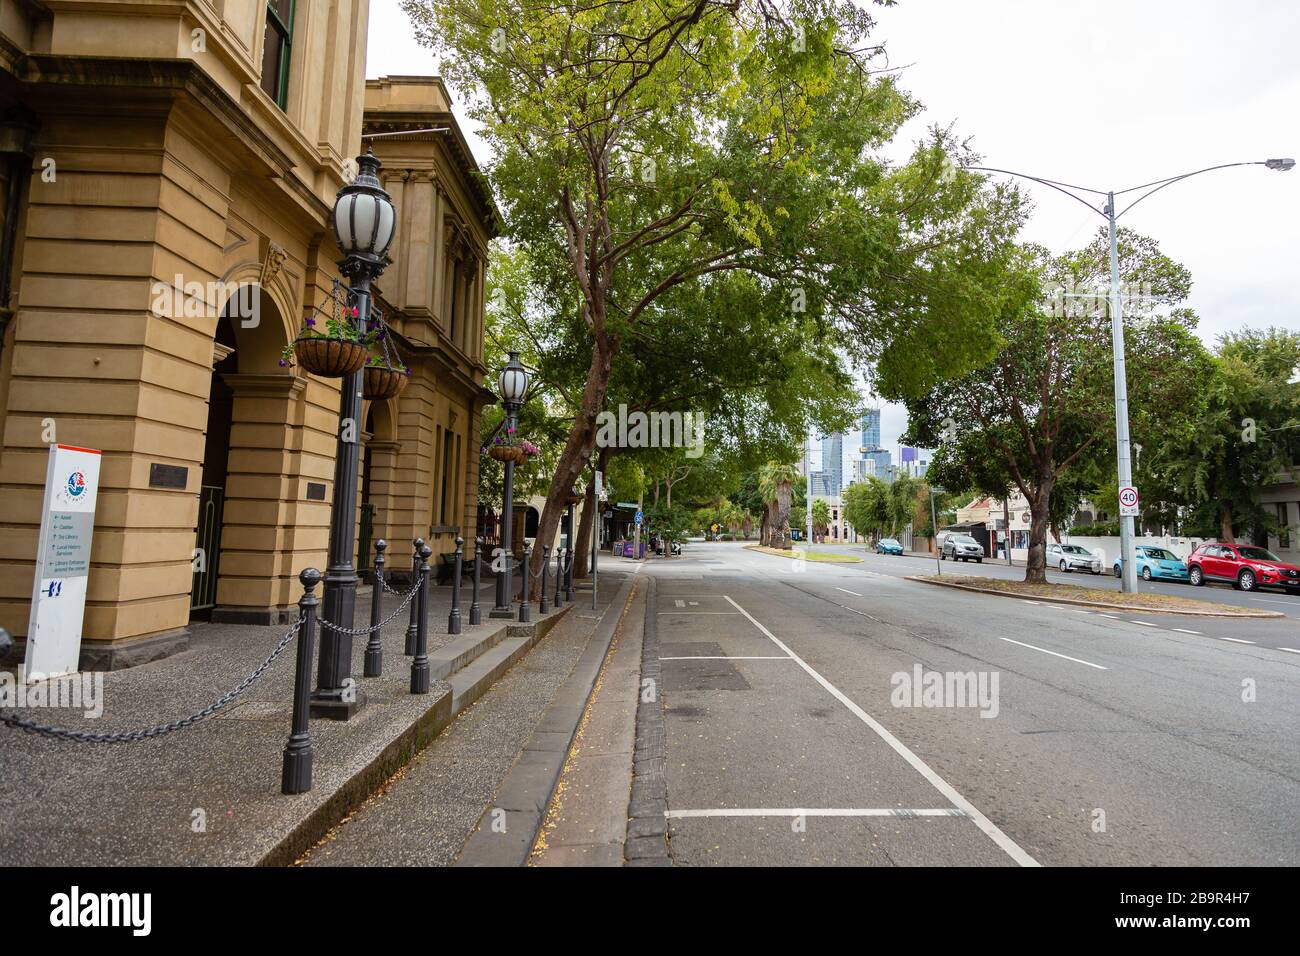 Melbourne, Australie, 25 mars 2020. Les rues du port de Melbourne sont vides car la pandémie COVID-19 frappe Melbourne, Australie. Crédit: Dave Hemaison/Alay Live News Banque D'Images